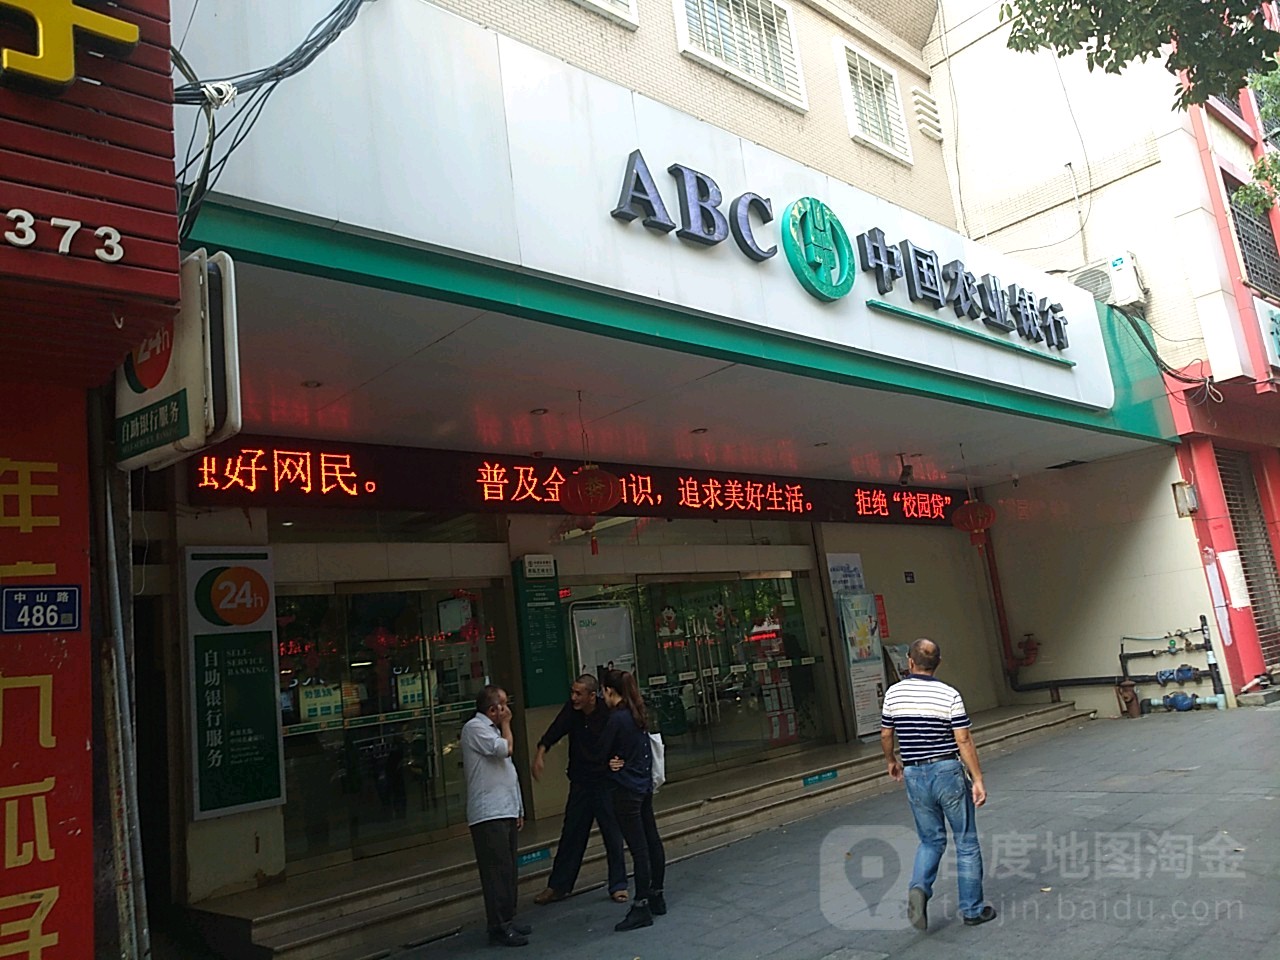 中國農業銀行24小時自助銀行(城關中山路店)